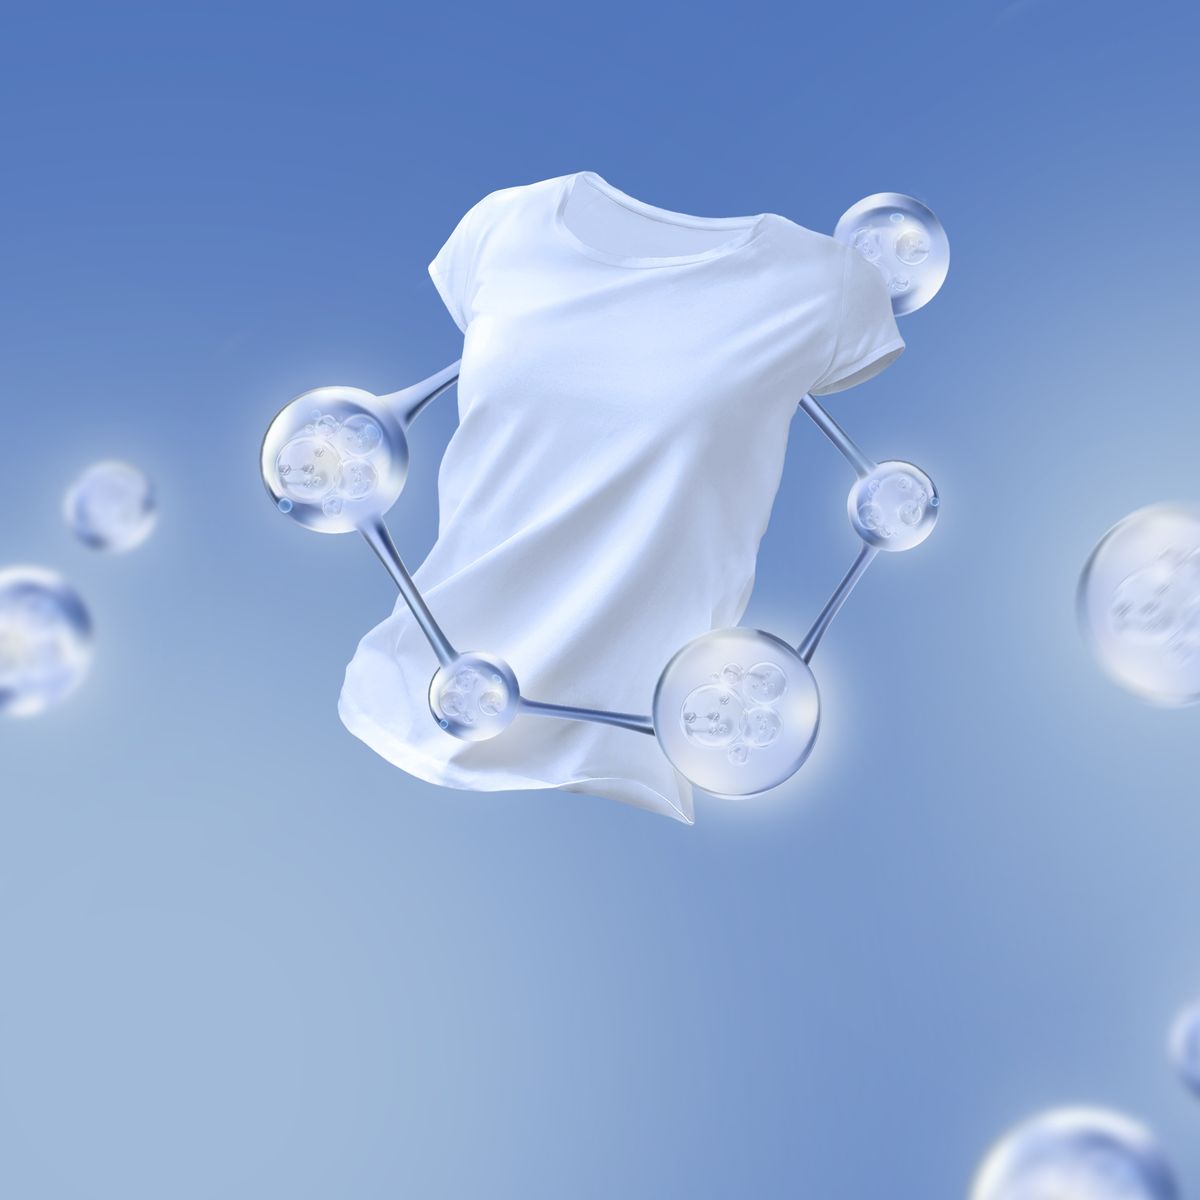 Washed,White,T-shirt,On,Blue,Background